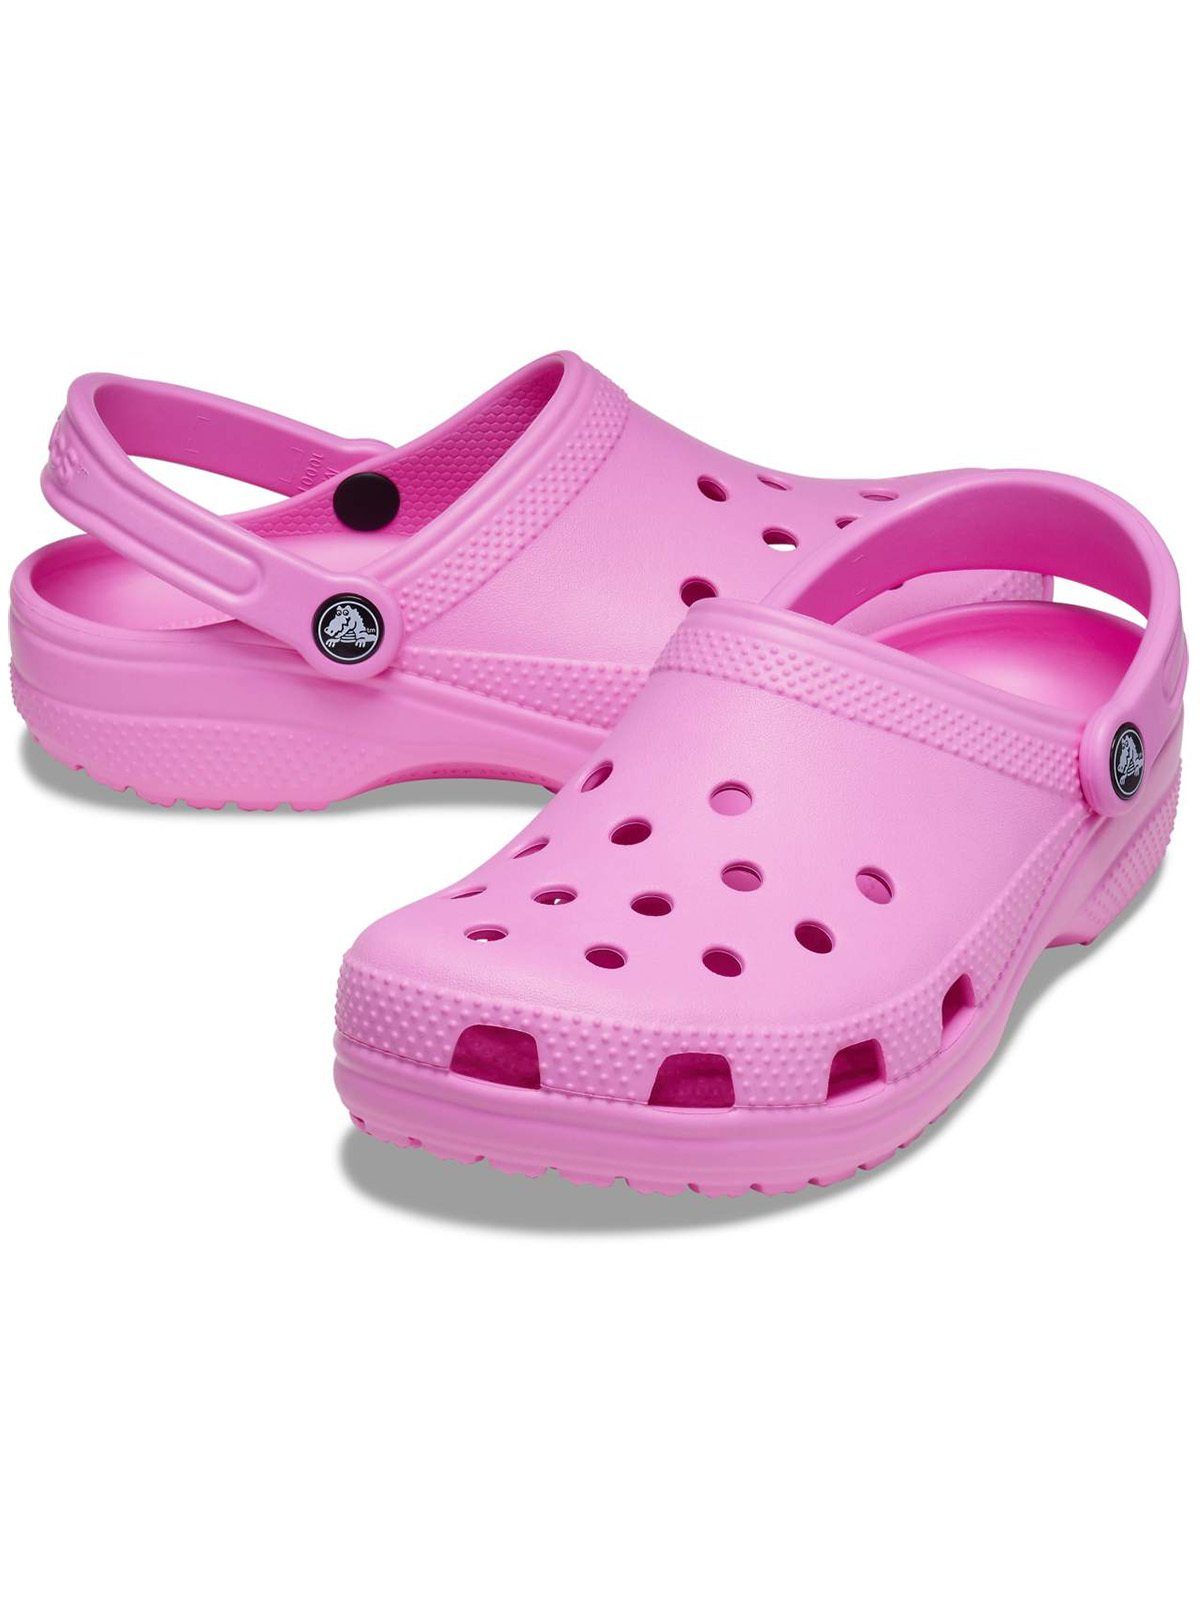 Clog Classic pink taffy Crocs Crocs Clog